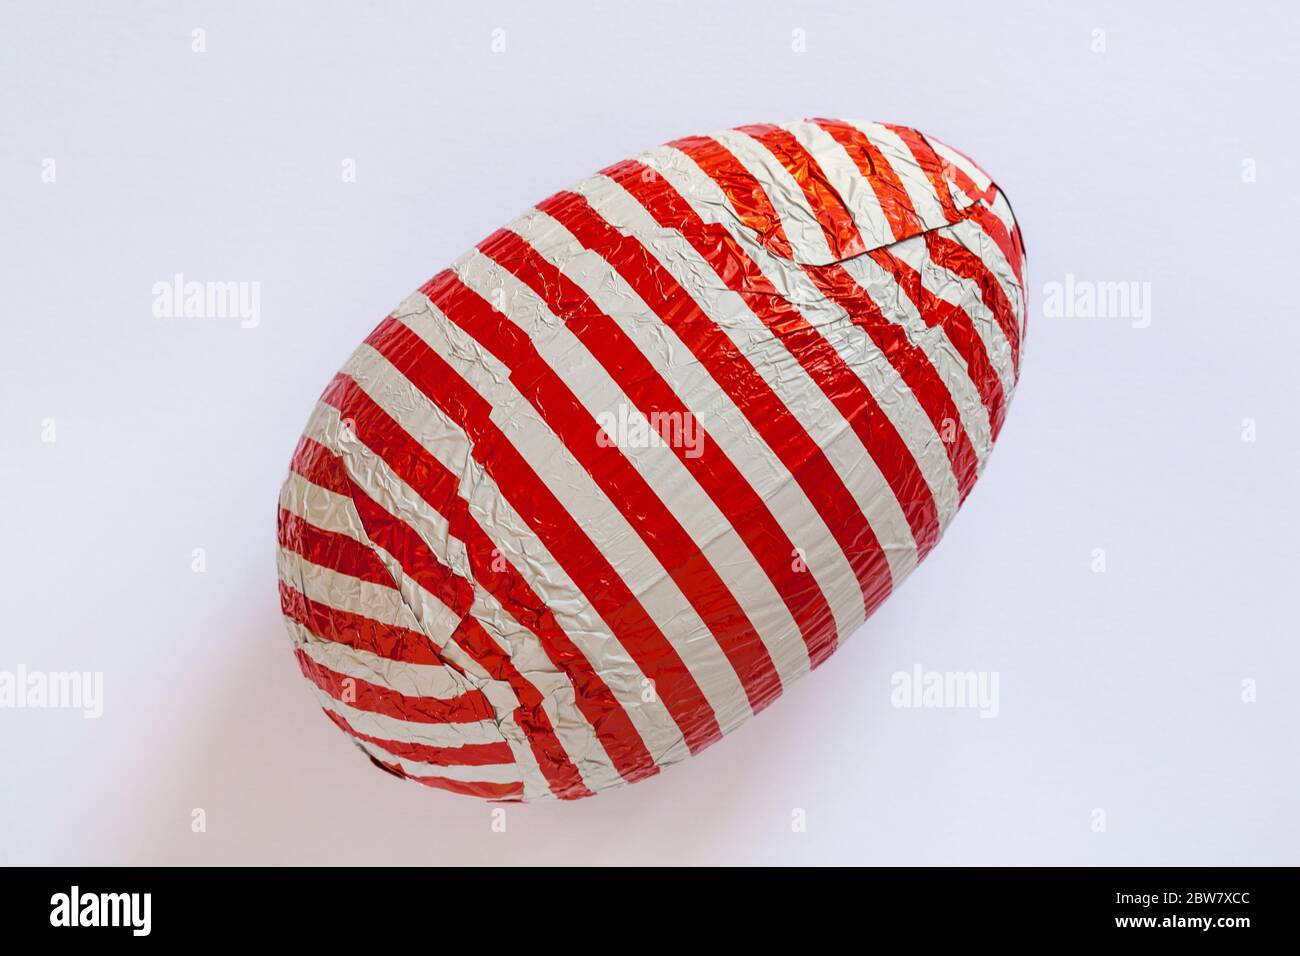 M&S Where's Wally Milchschokolade Osterei auf weißem Hintergrund isoliert - rot-weiß gestreifte Folie eingewickelt Stockfoto